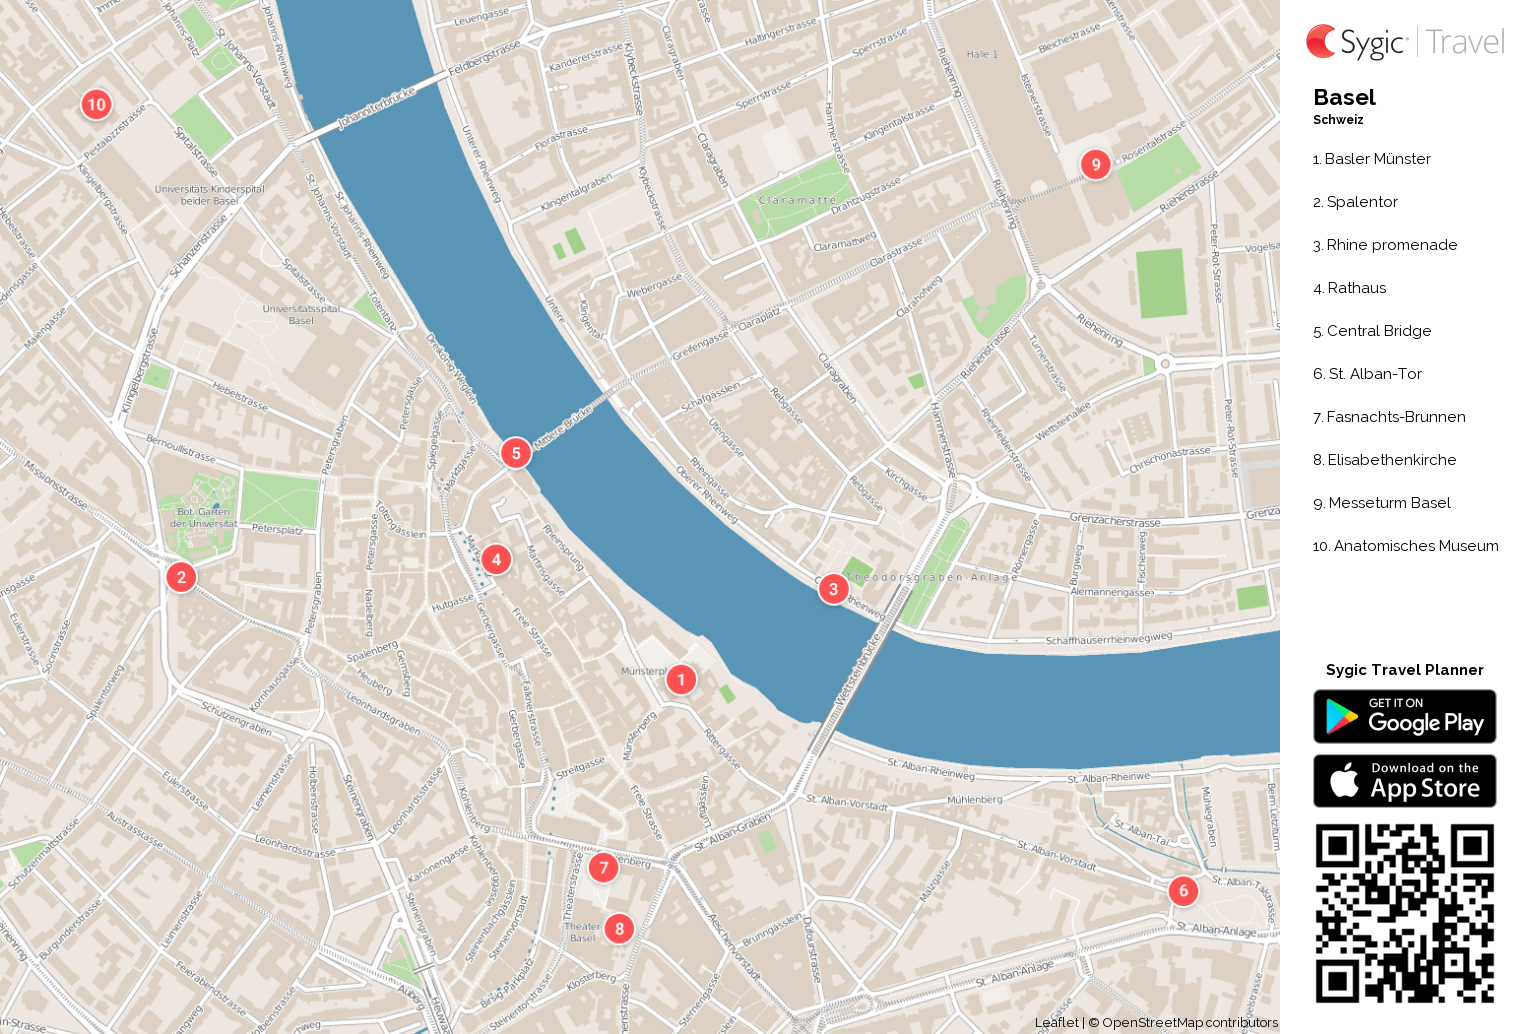 basel karte sehenswürdigkeiten Karte Von Basel Ausdrucken Sygic Travel basel karte sehenswürdigkeiten